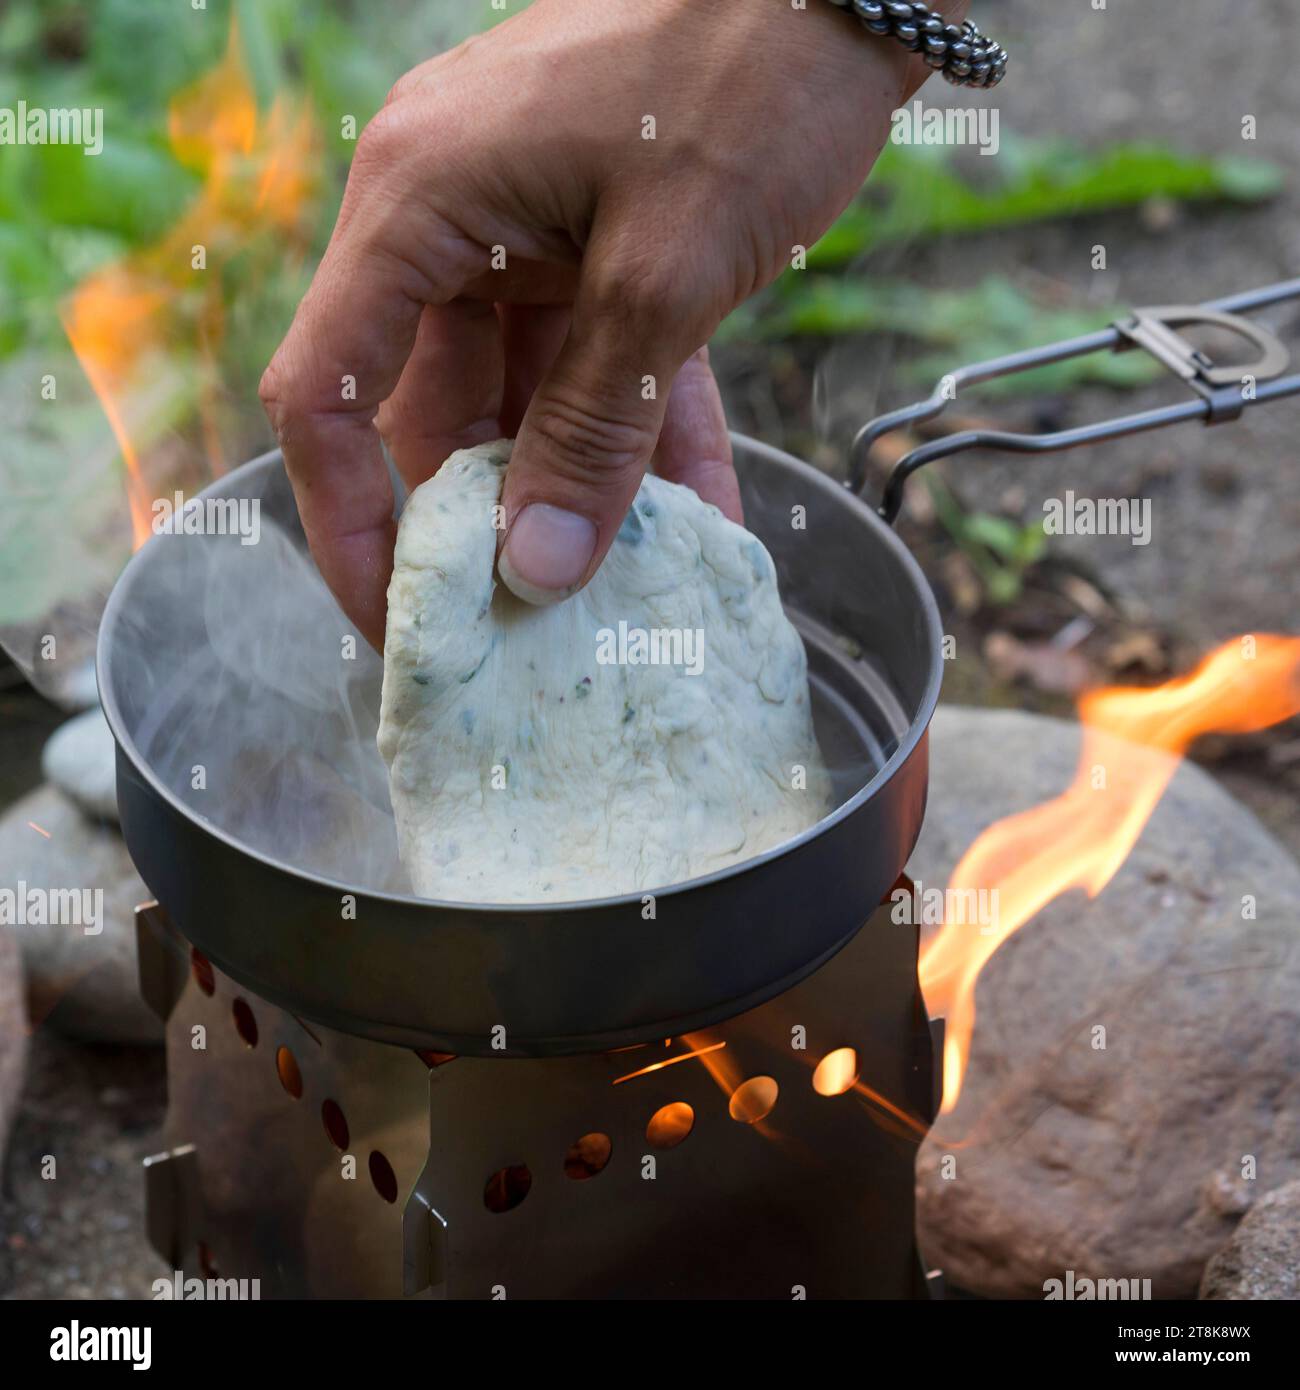 Bannockherstellung, wird auf offenem Feuer gebacken, Brotteig wird gebildet und in einer Pfanne auf einem Campingkocher gebacken, Serienbild 5/5 Stockfoto